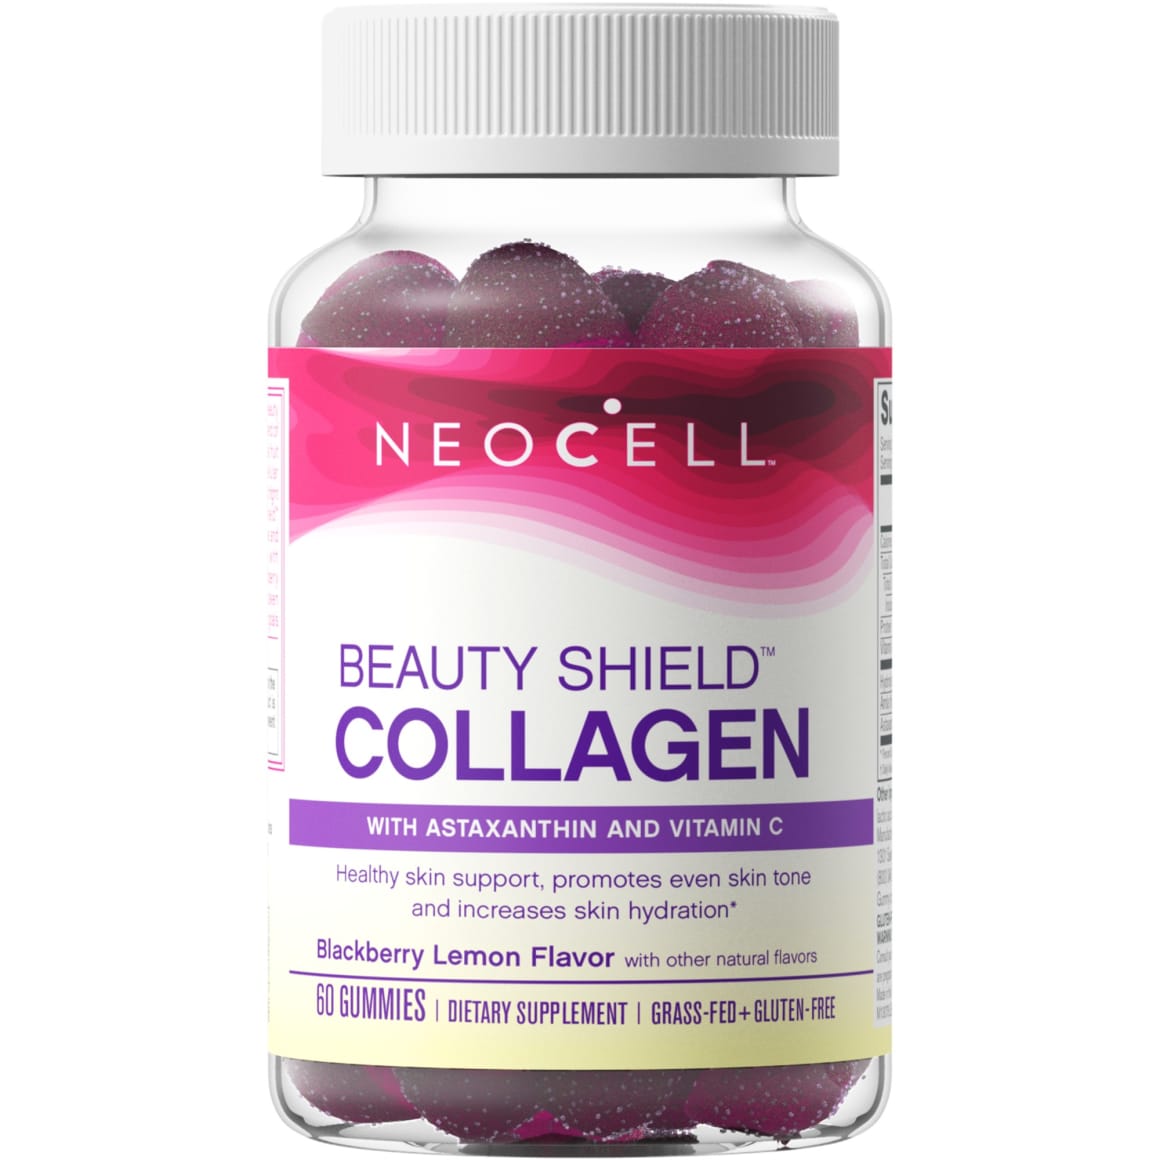 NEOCELL
Beauty Shield Collagen Gummies (60 gummies)